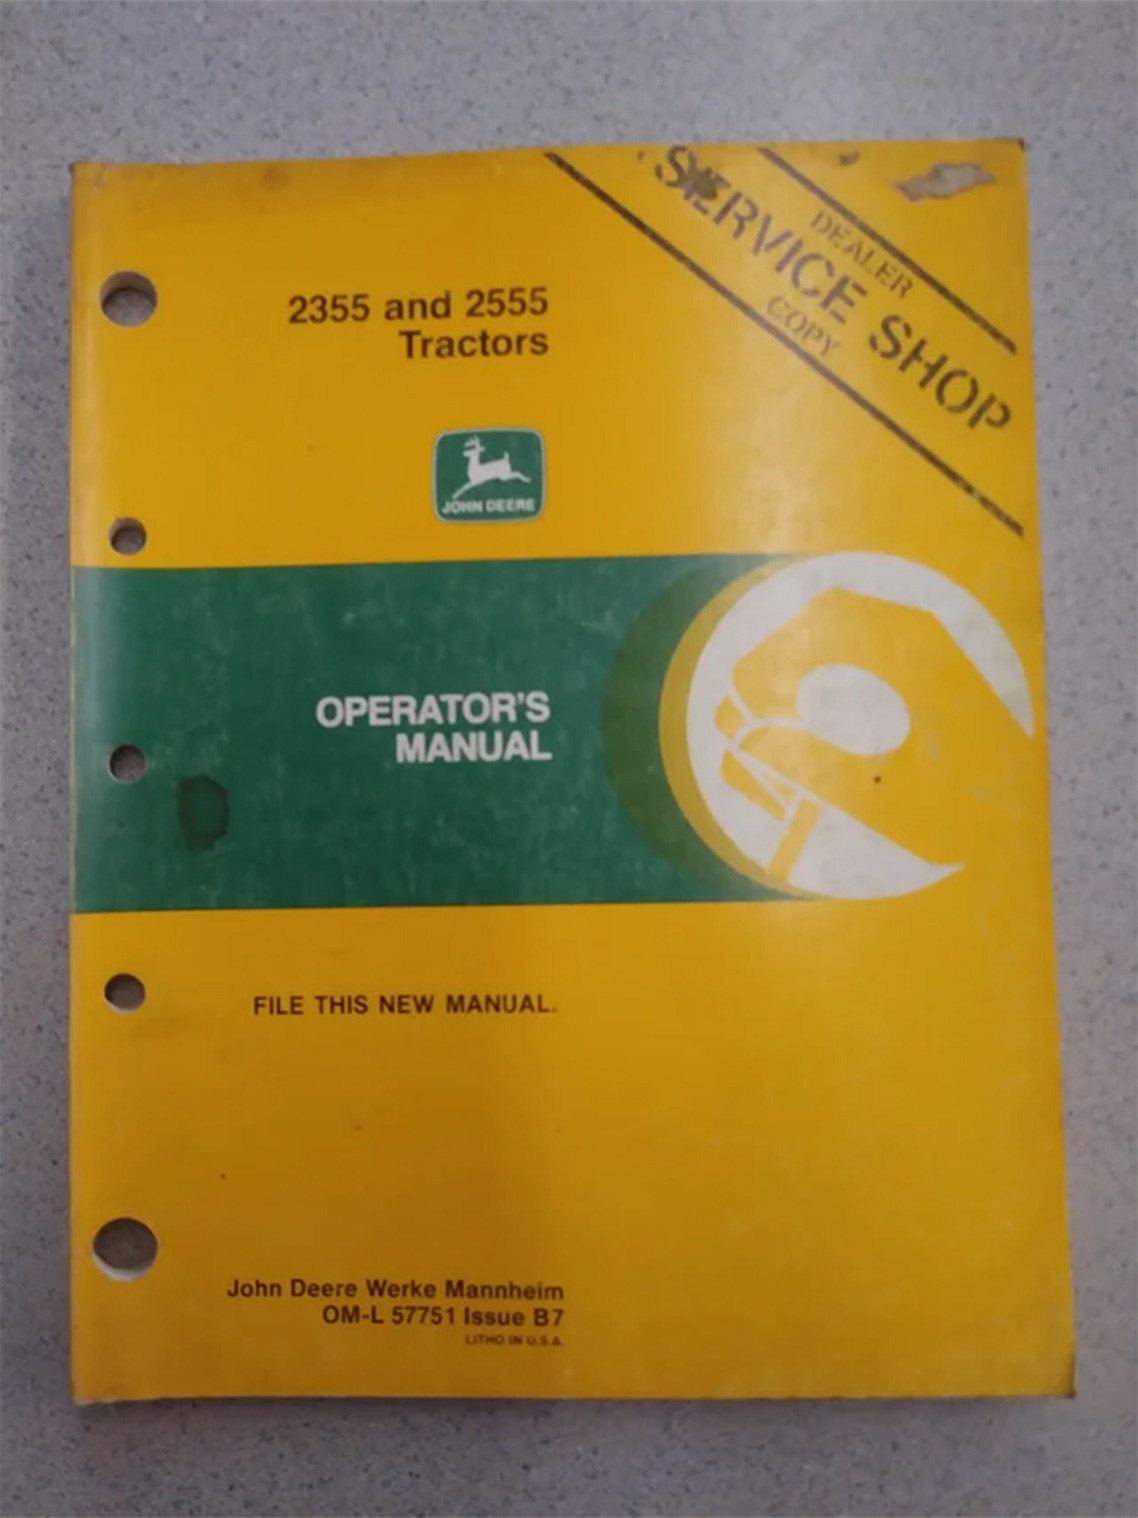 John Deere 2355 and 2555 Operator's Manual